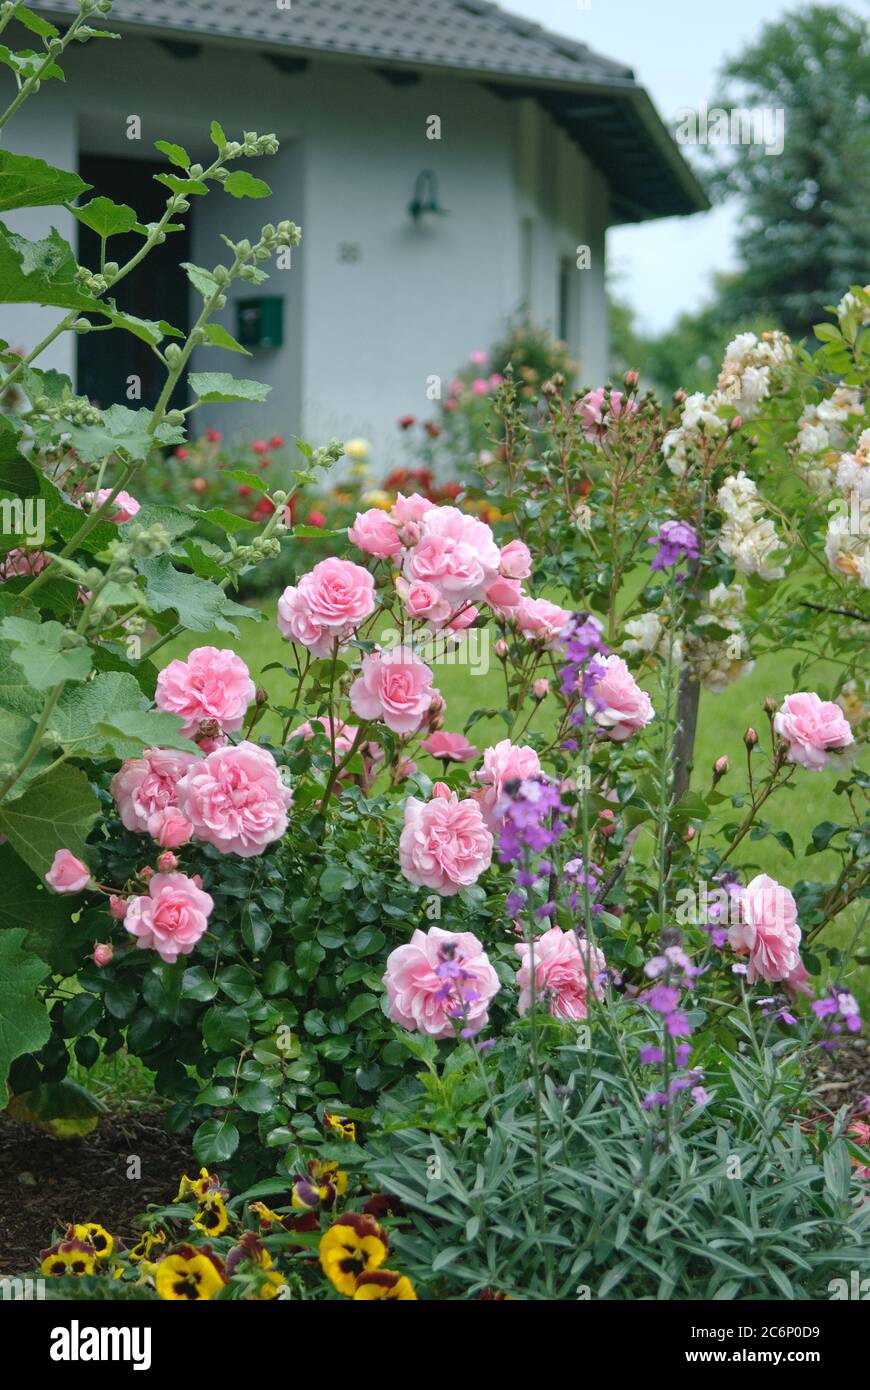 Bodendeckerrosen Rosa Bonica 82, Ground cover roses Rosa Bonica 82 Stock Photo